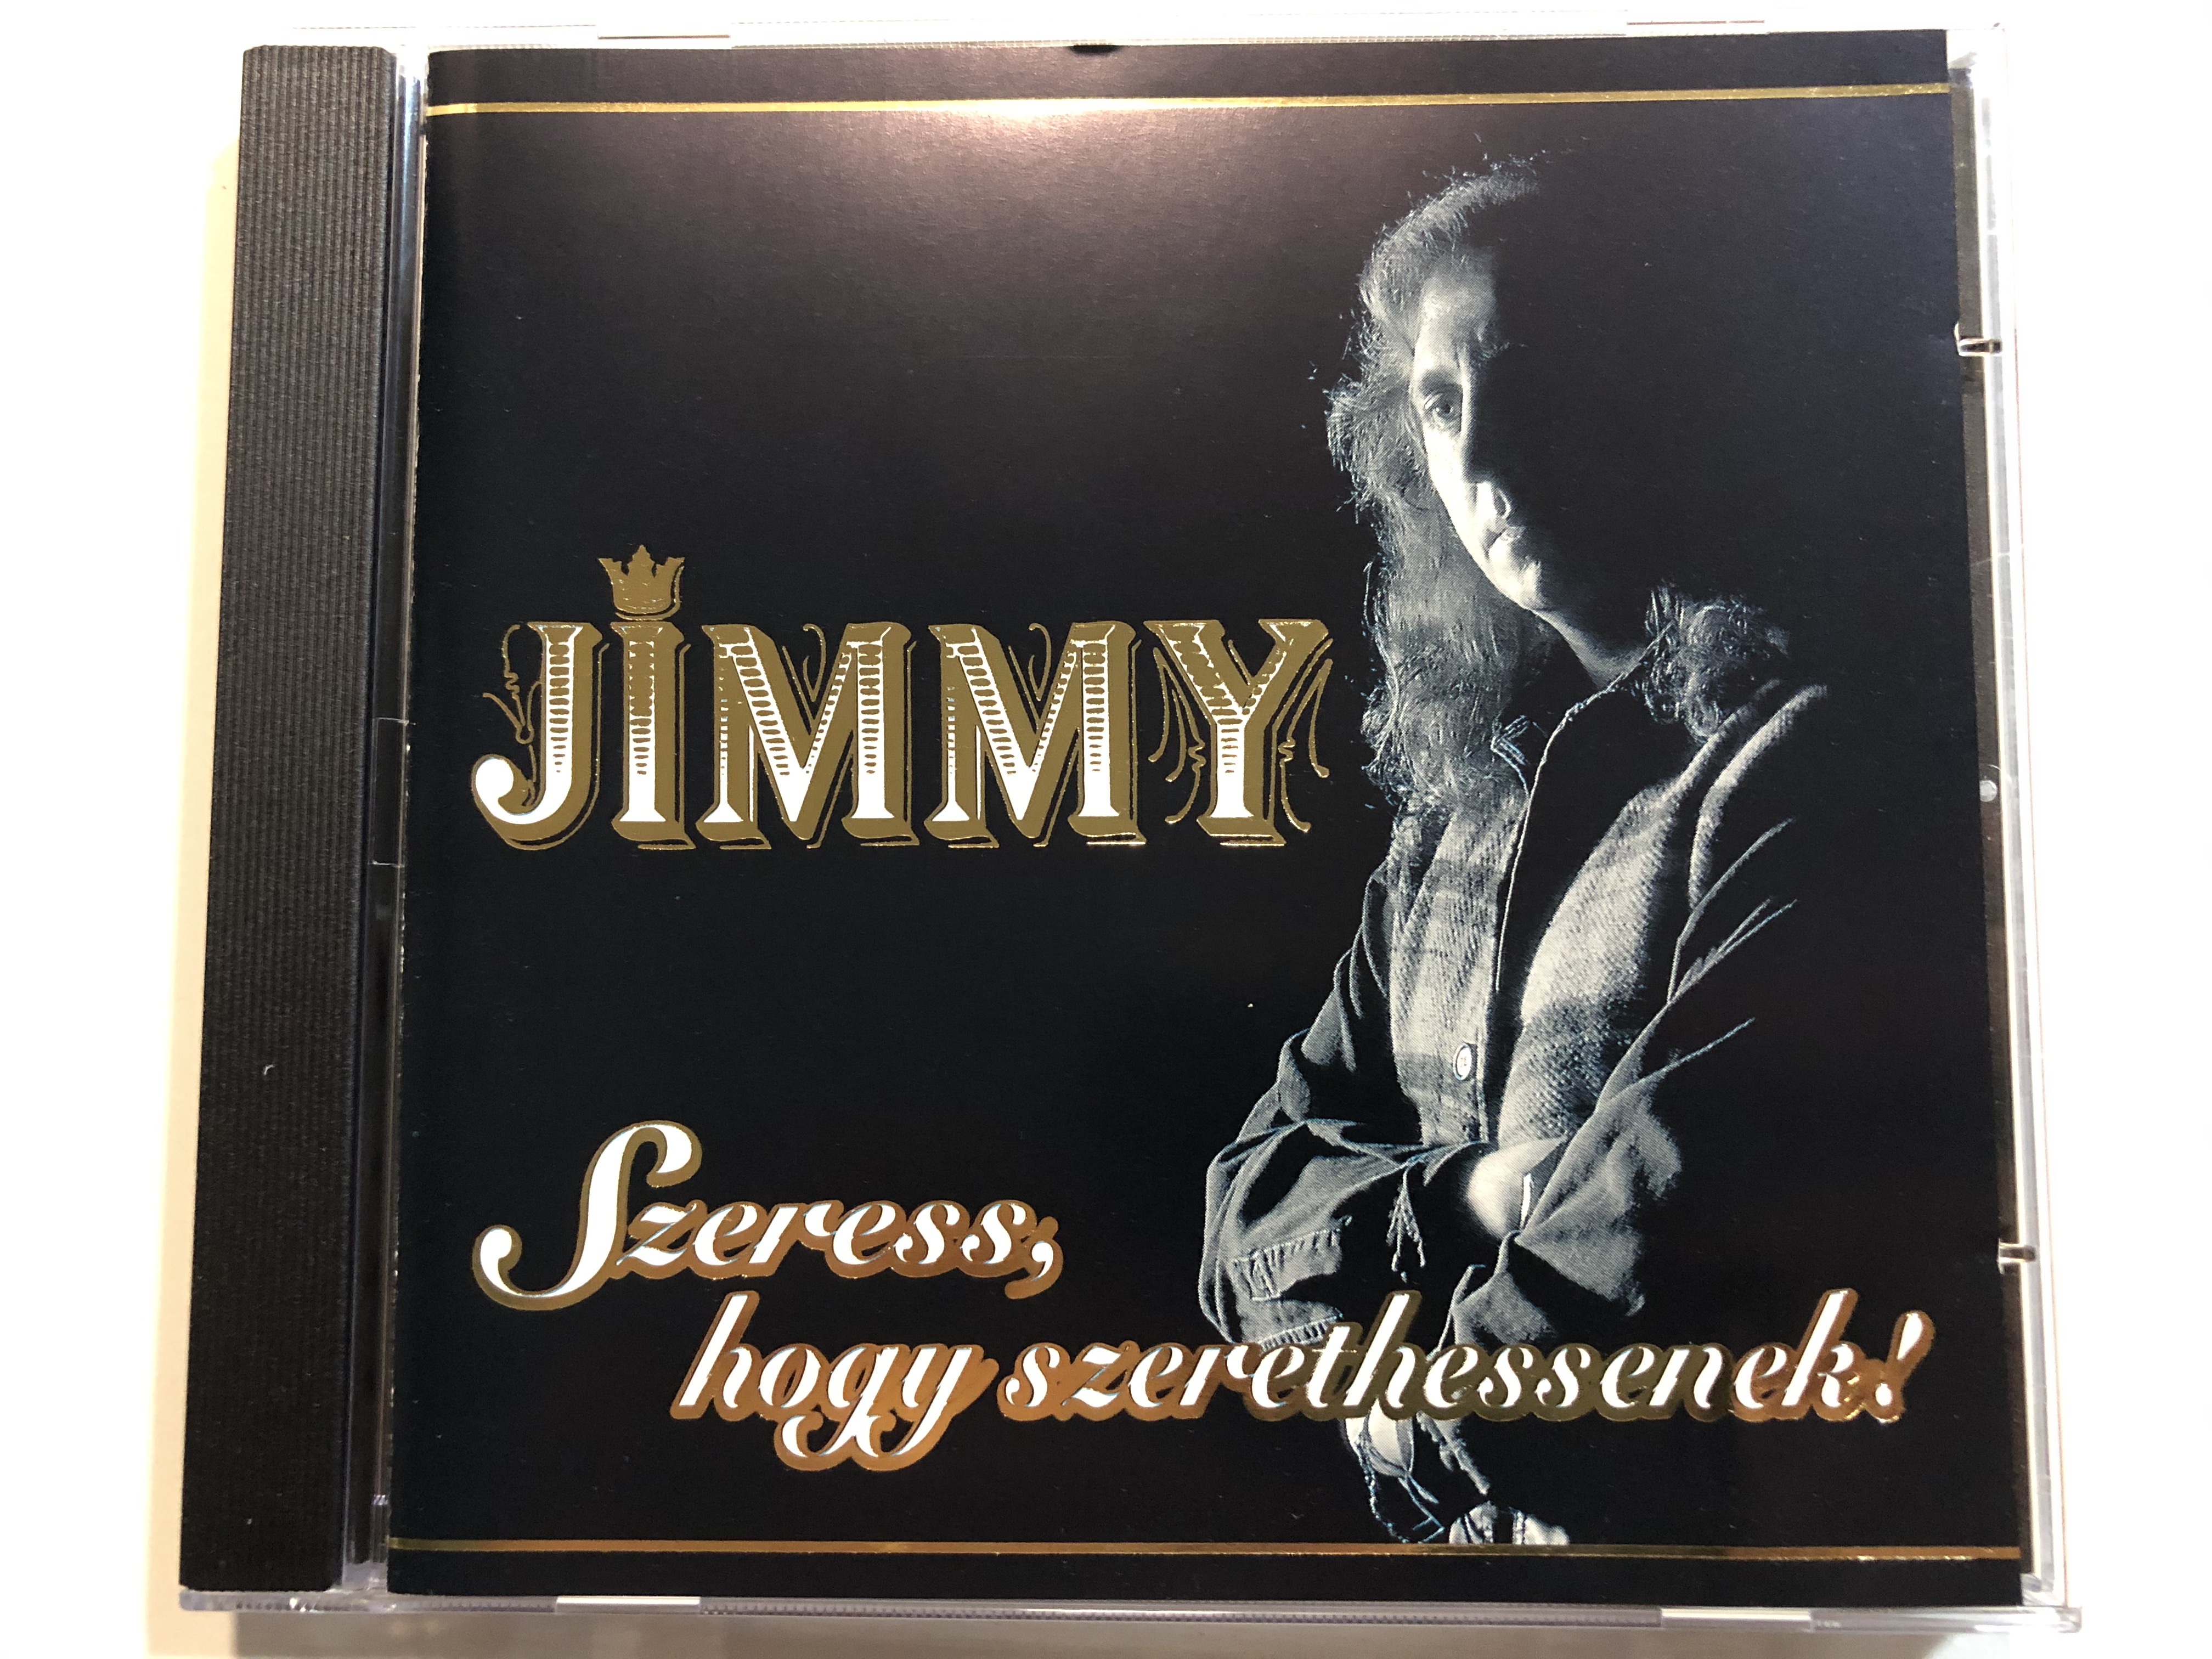 jimmy-szeress-hogy-szerethessenek-magneoton-audio-cd-0630-13013-2-1-.jpg